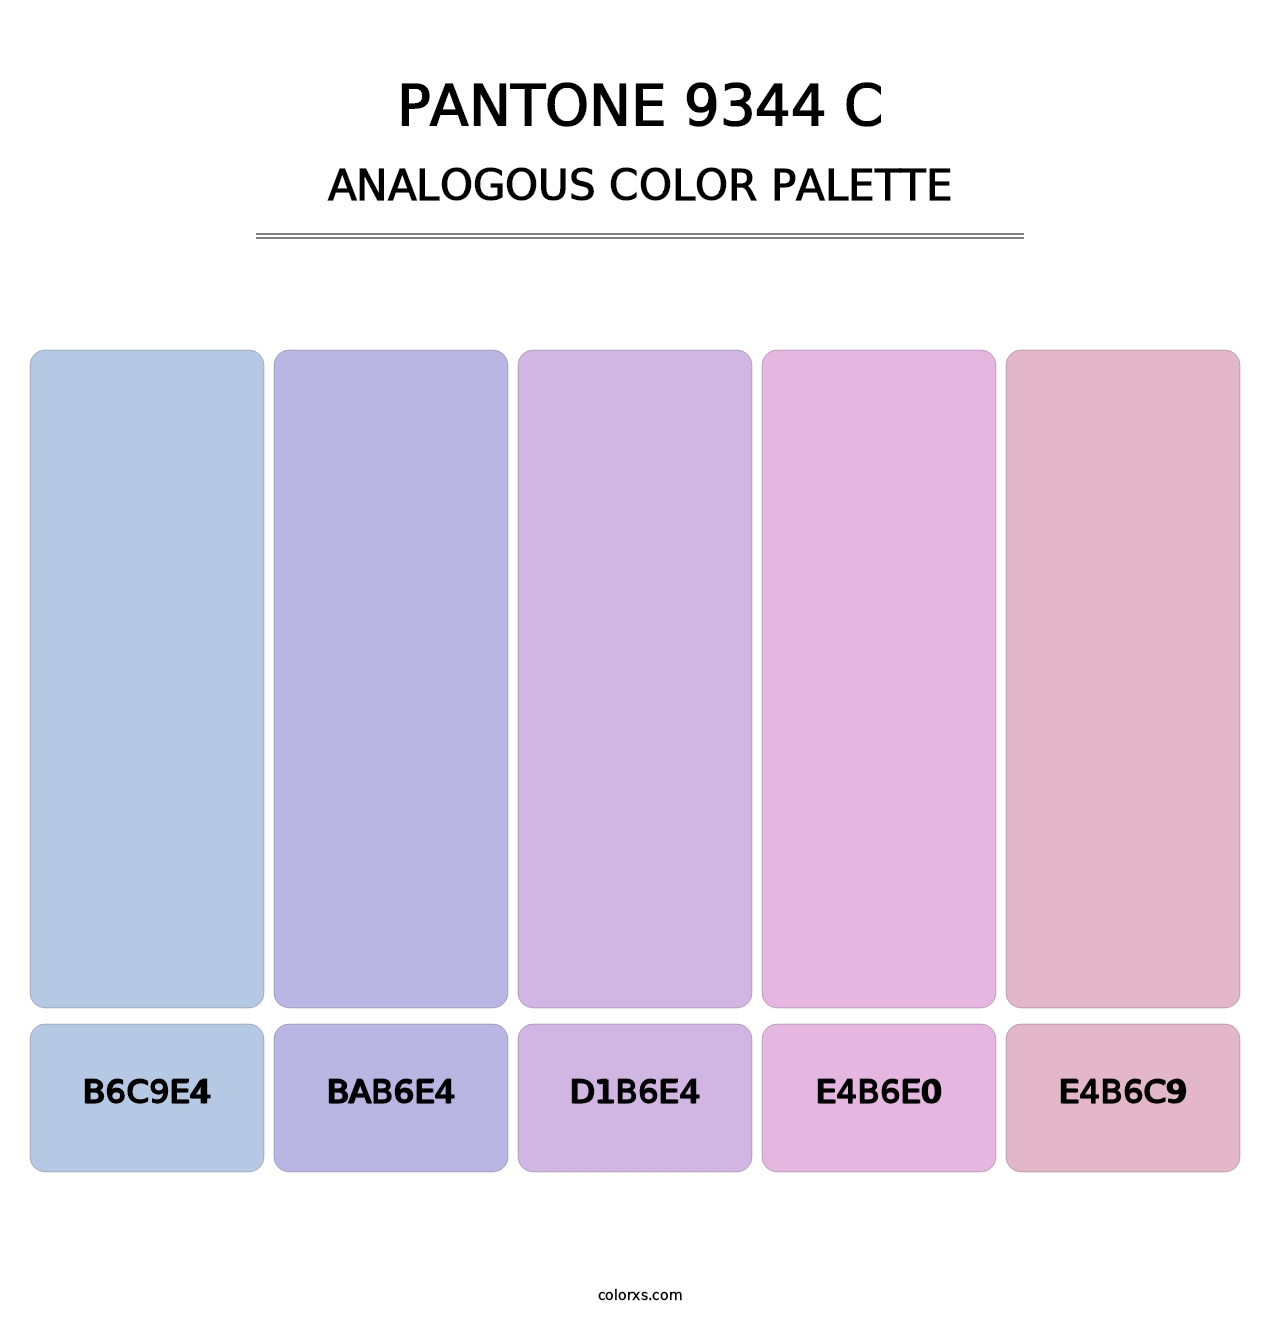 PANTONE 9344 C - Analogous Color Palette